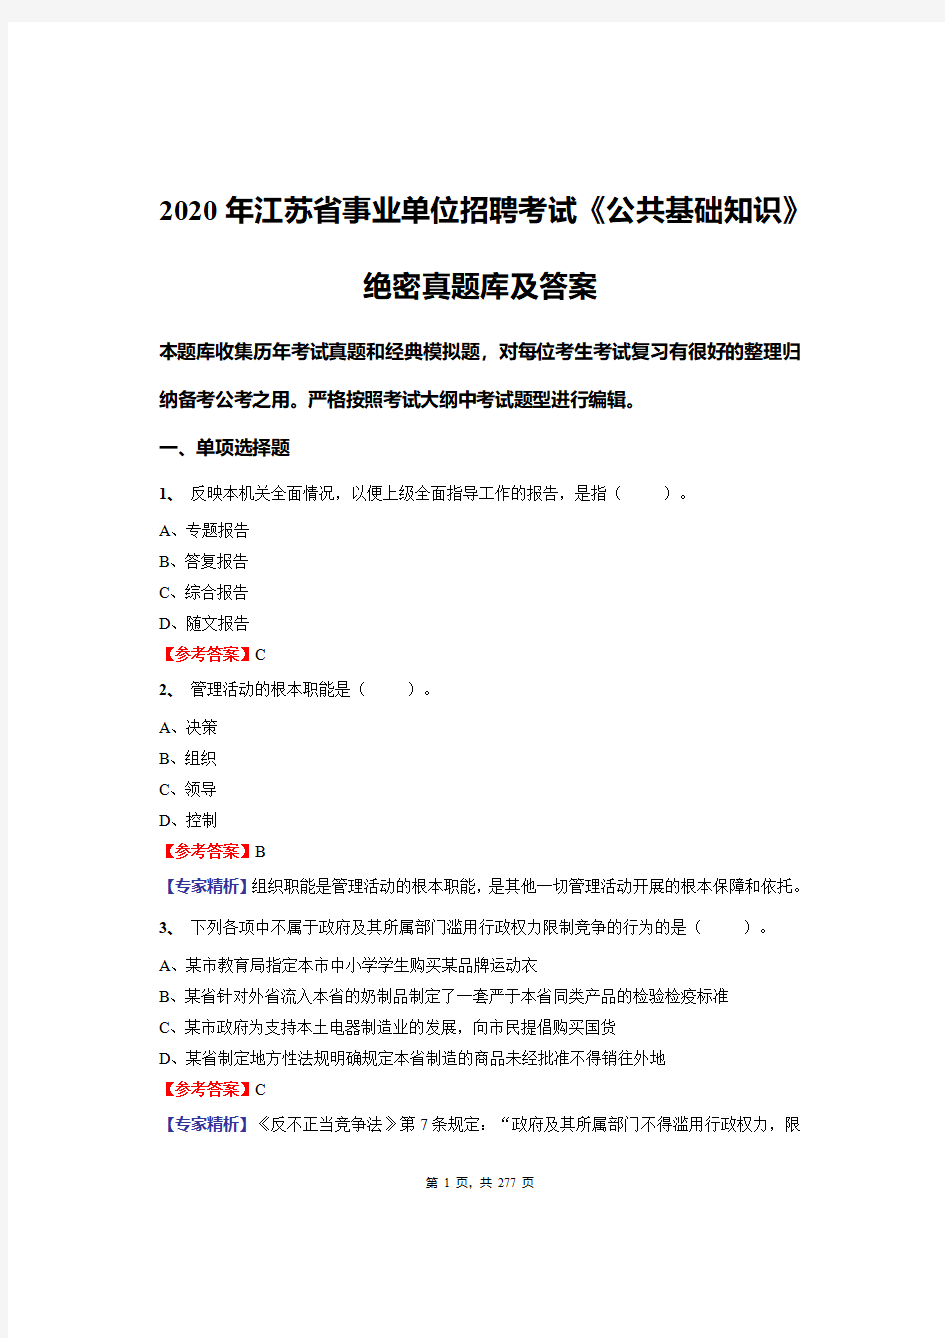 2020年江苏省事业单位招聘考试《公共基础知识》绝密真题库及答案